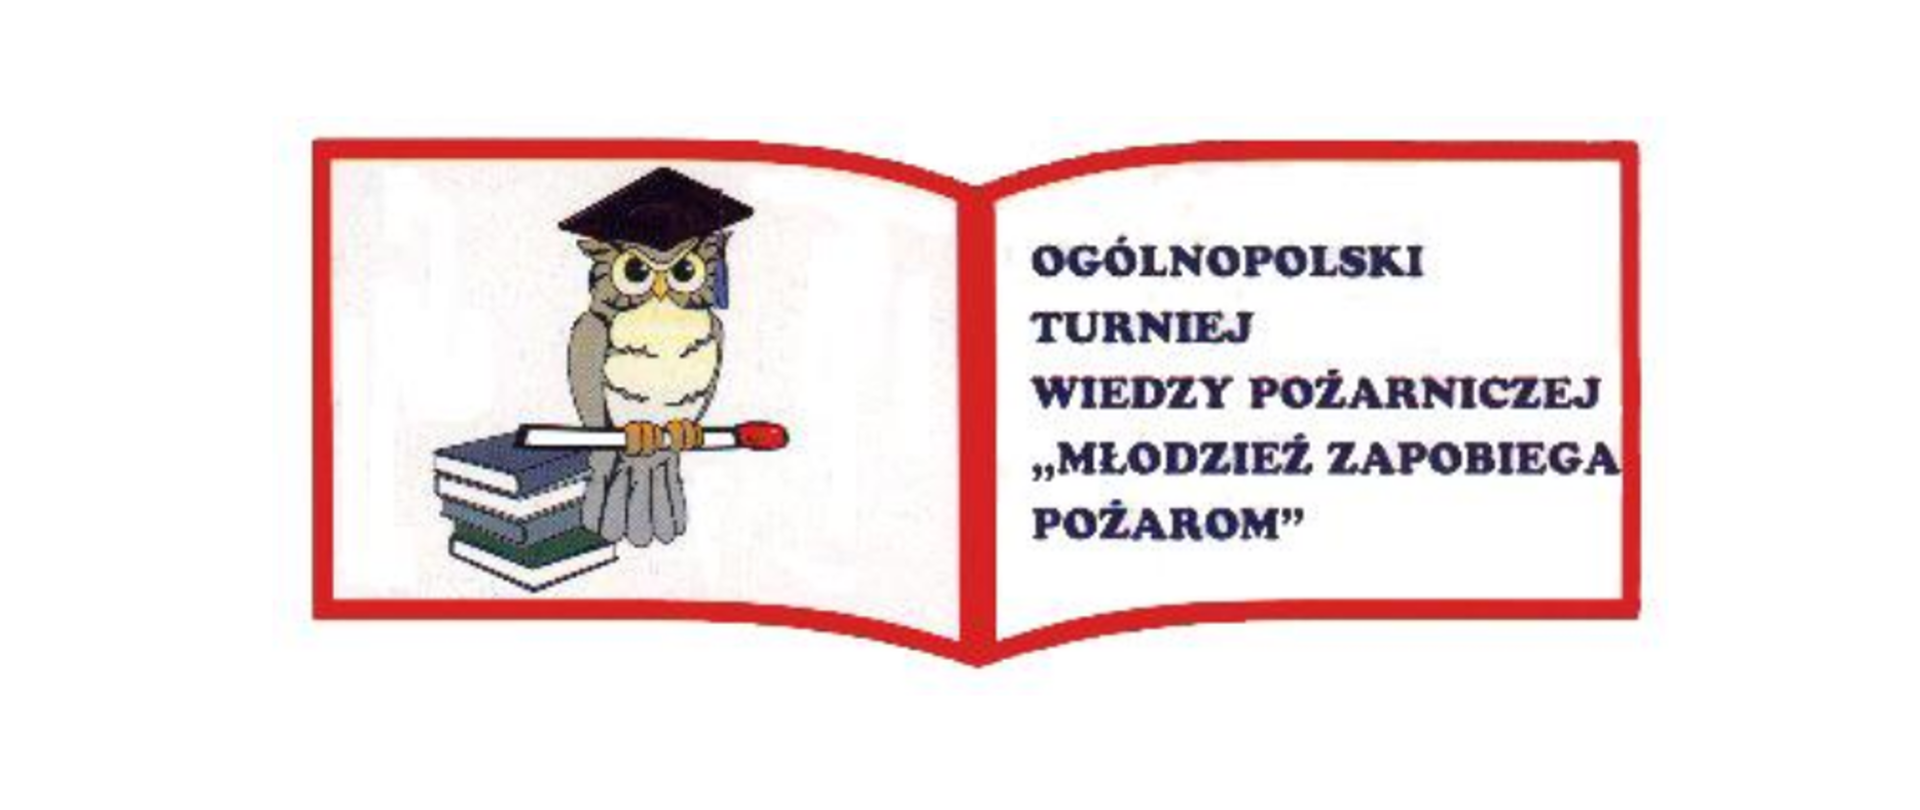 Zdjęcie przedstawia logo Ogólnopolskiego Turnieju Wiedzy Pożarniczej. Z lewej strony postać sowy z zapałką, która siedzi na książkach. Z prawej napis Ogólnopolski Turniej Wiedzy Pożarniczej "Młodzież Zapobiega Pożarom".